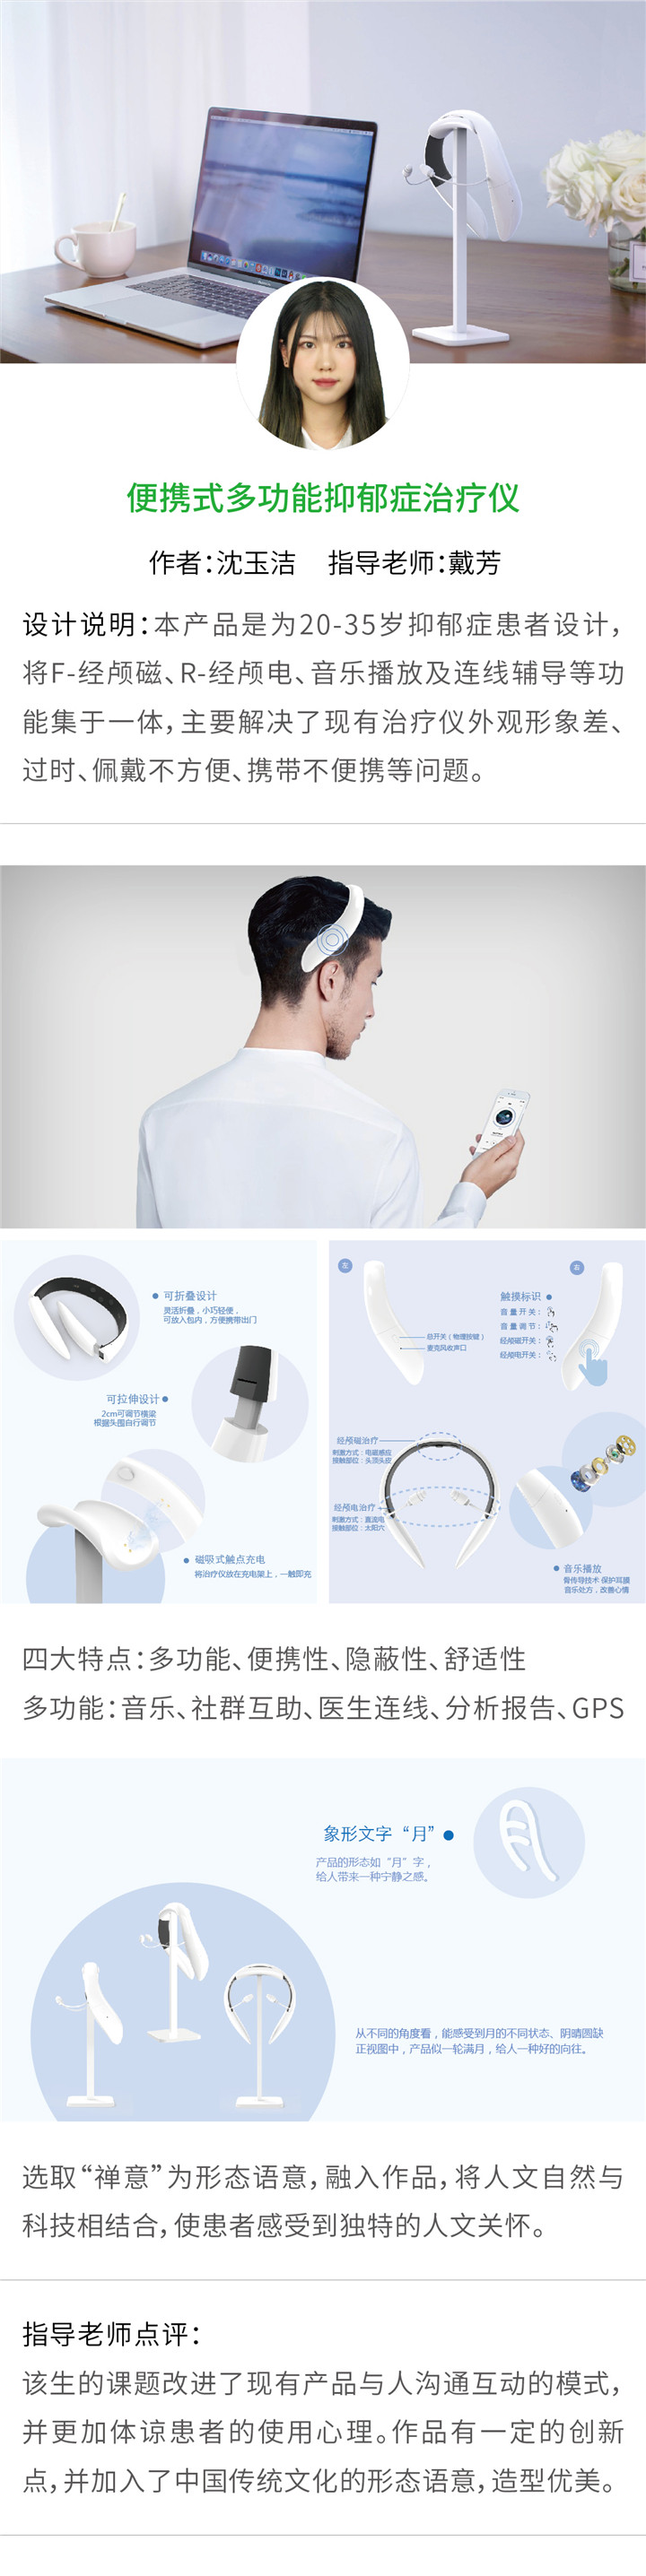 工业设计——便携式多功能抑郁症治疗仪-设计中国